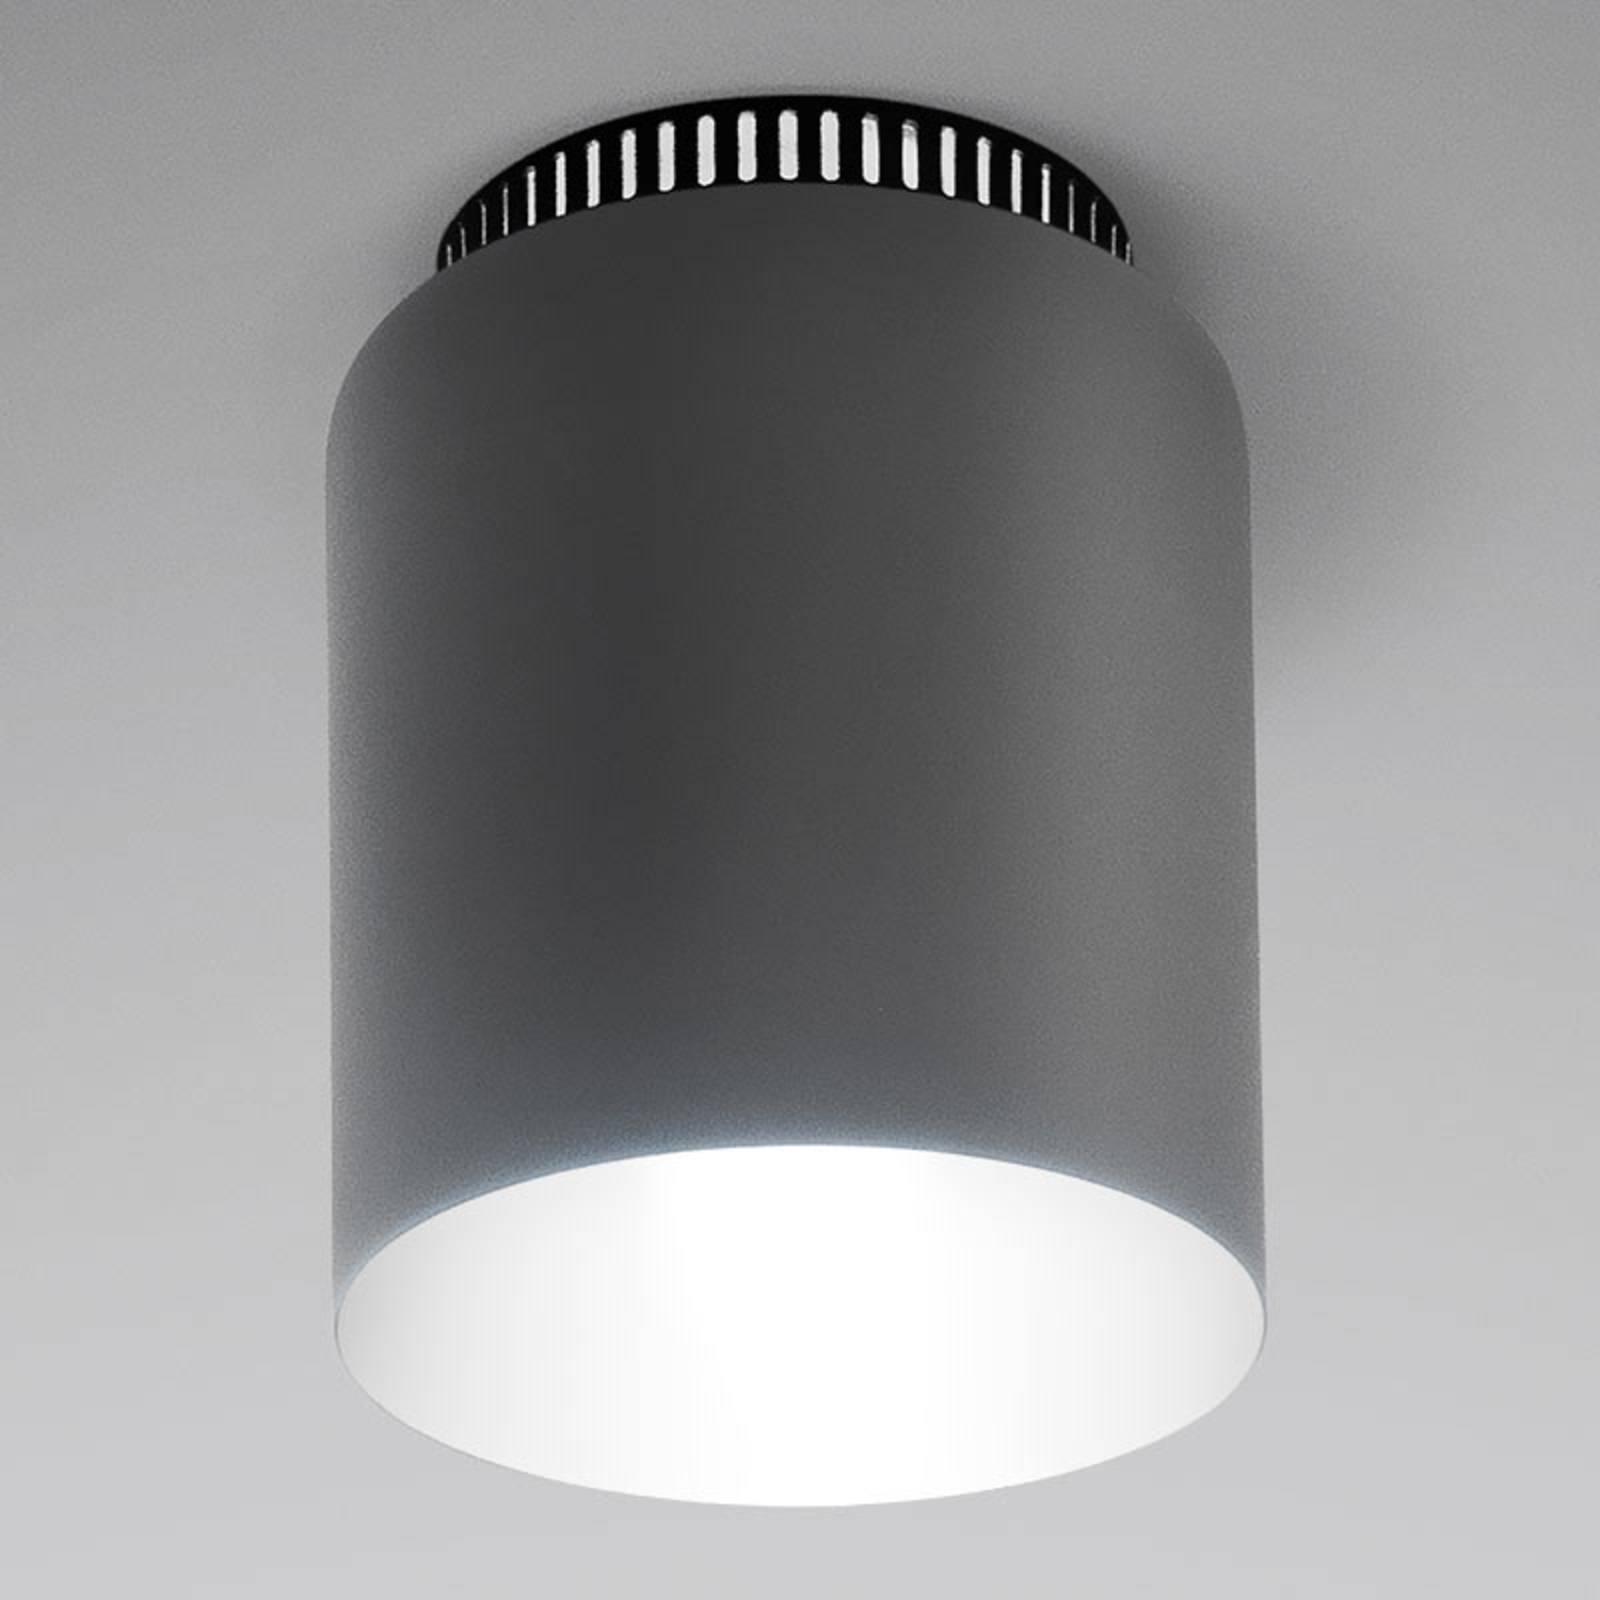 Dizajnérske stropné svietidlo Aspen C17A LED sivé